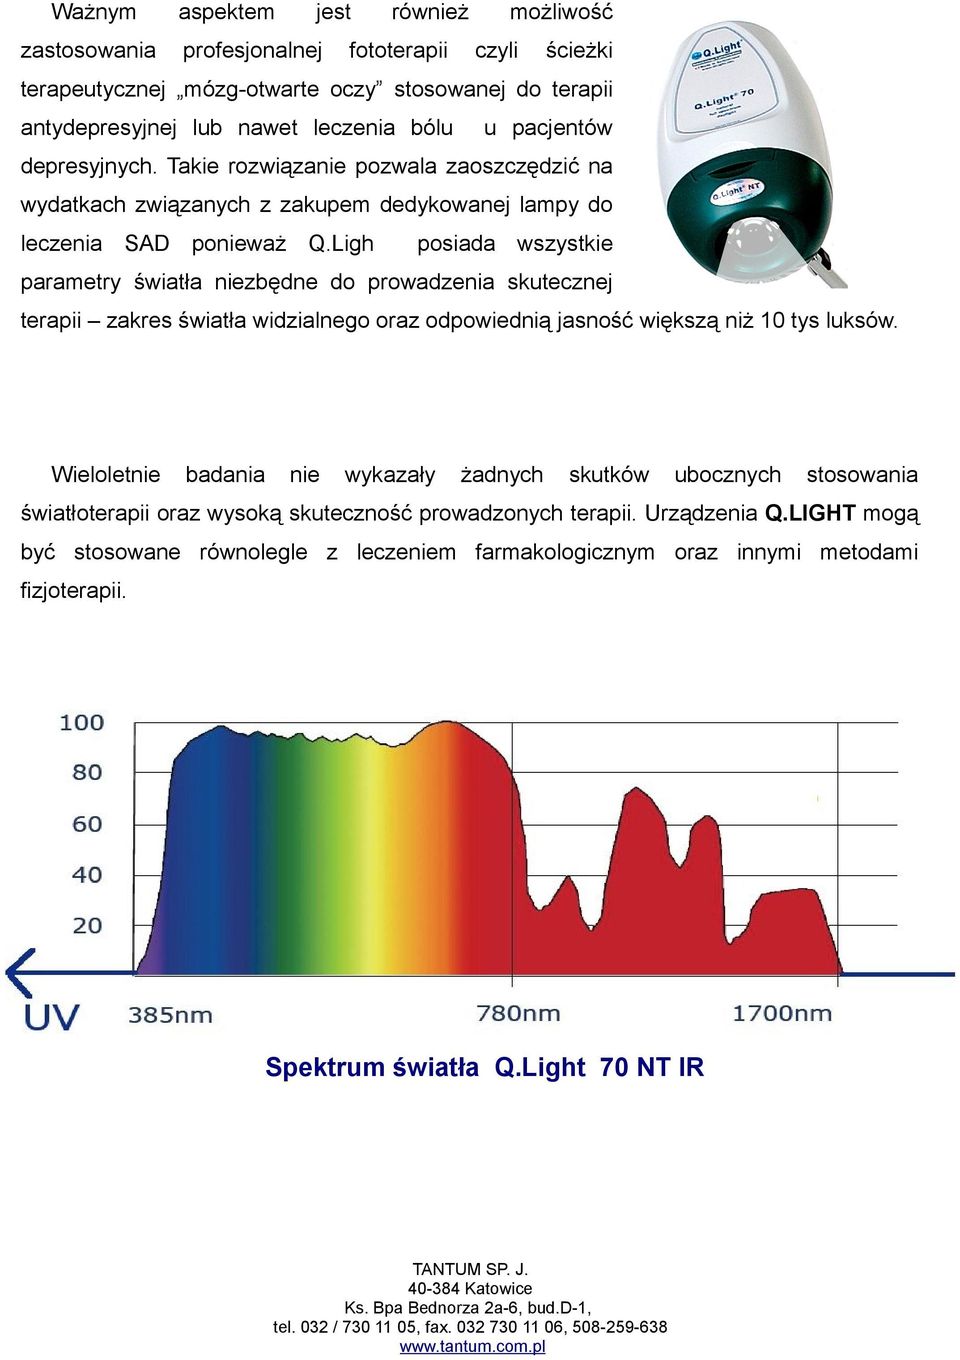 Ligh posiada wszystkie parametry światła niezbędne do prowadzenia skutecznej terapii zakres światła widzialnego oraz odpowiednią jasność większą niż 10 tys luksów.